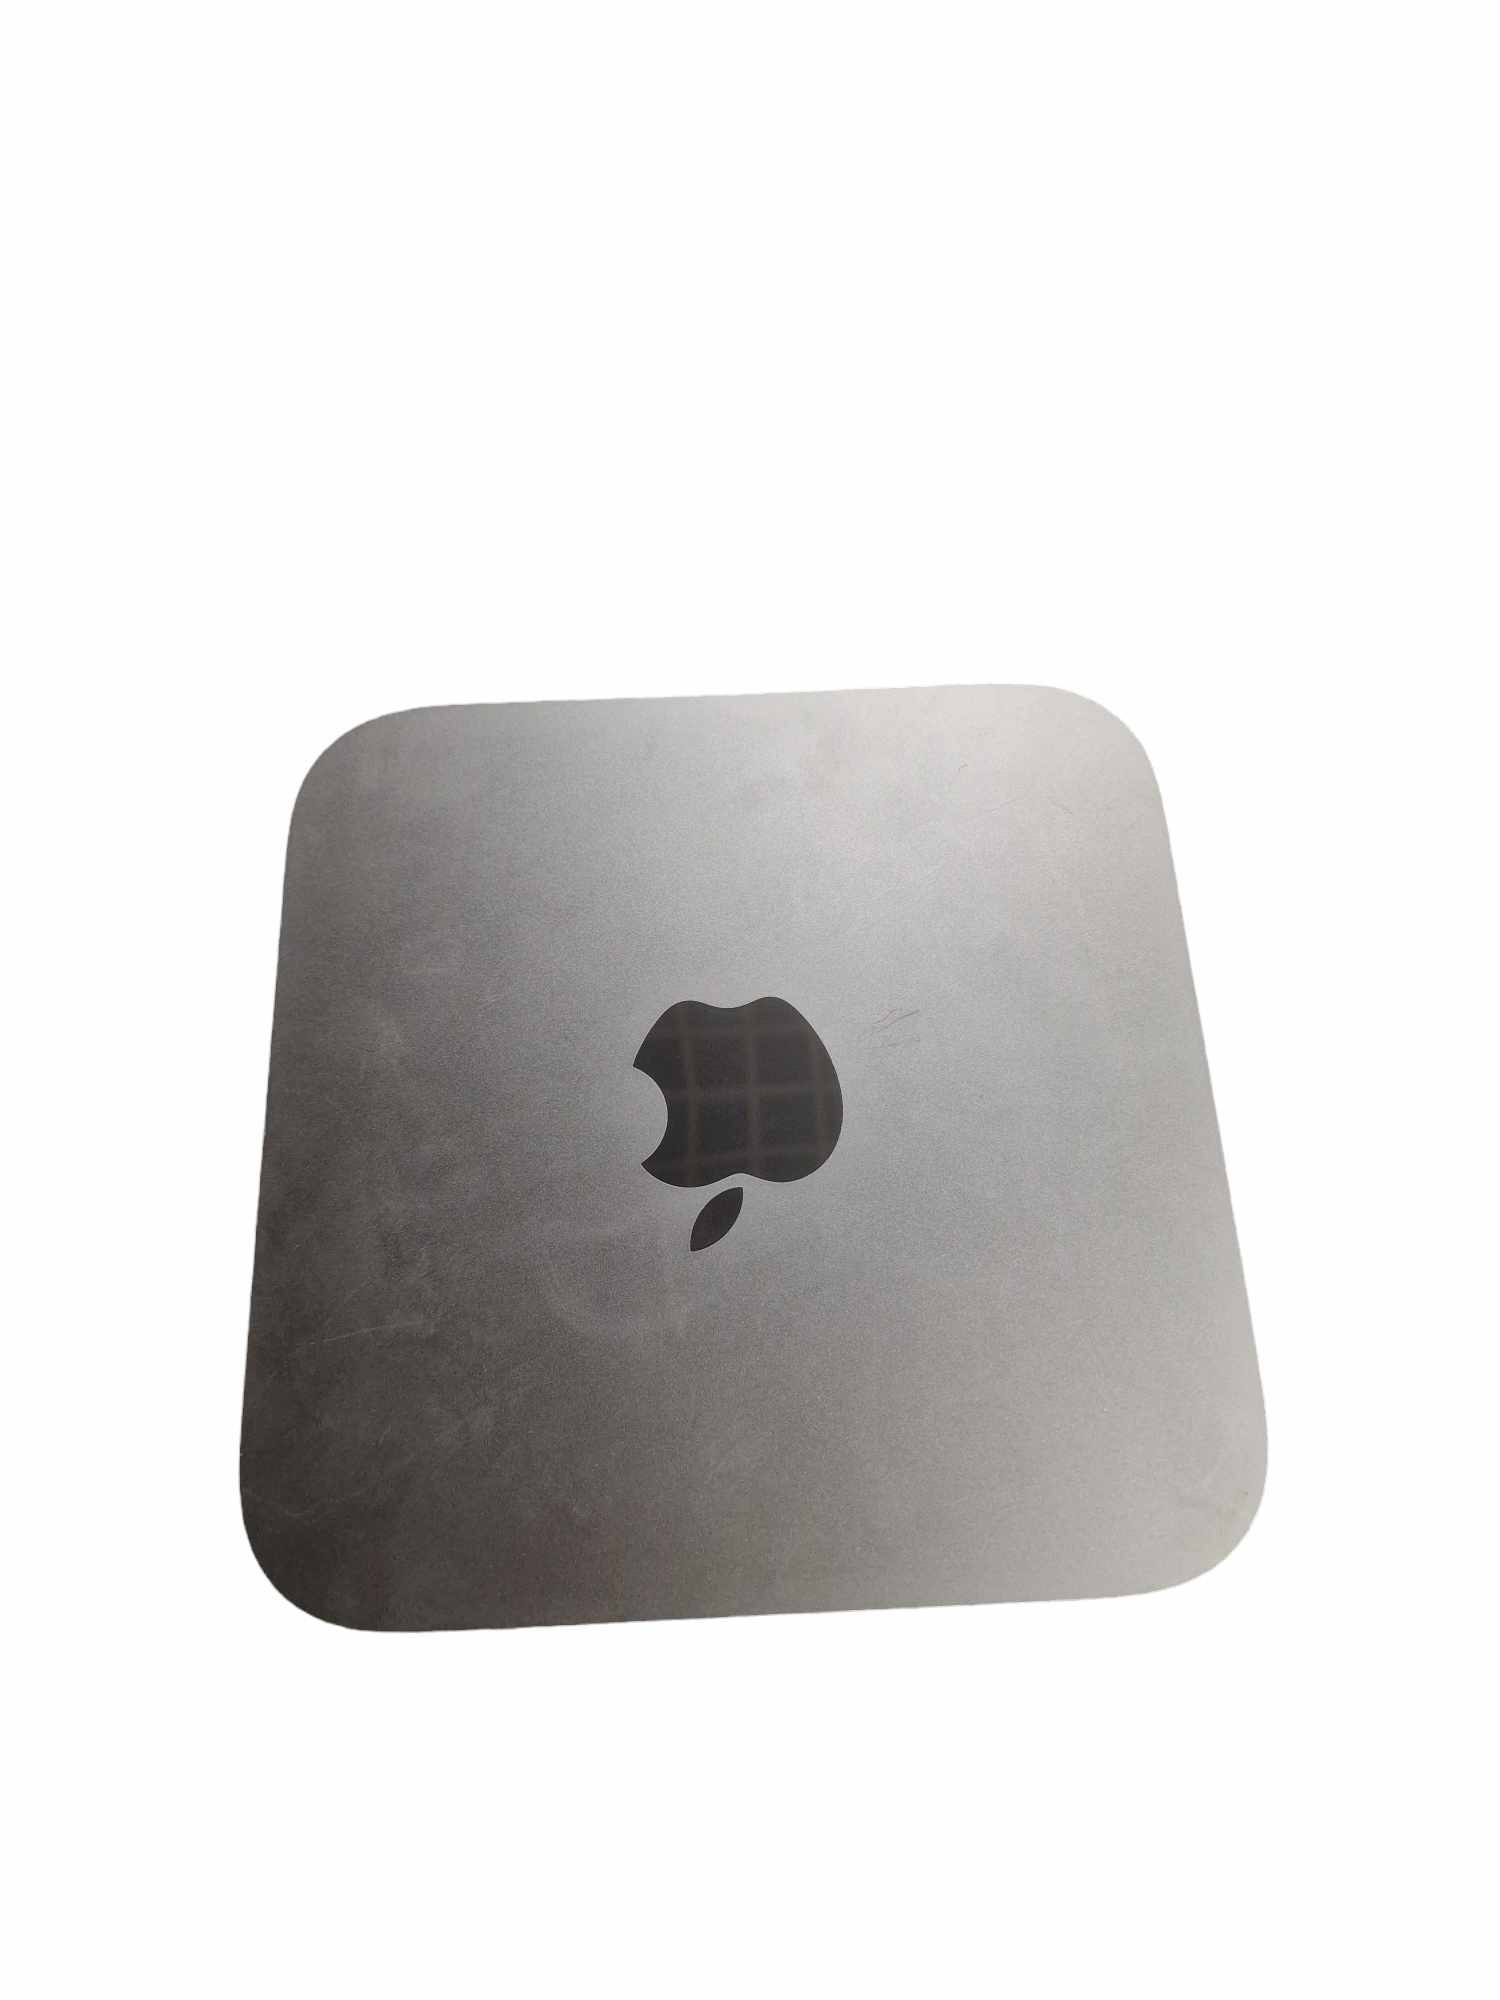 Mac Mini 8,1 32GB Ram 256GB SSD i3-8th